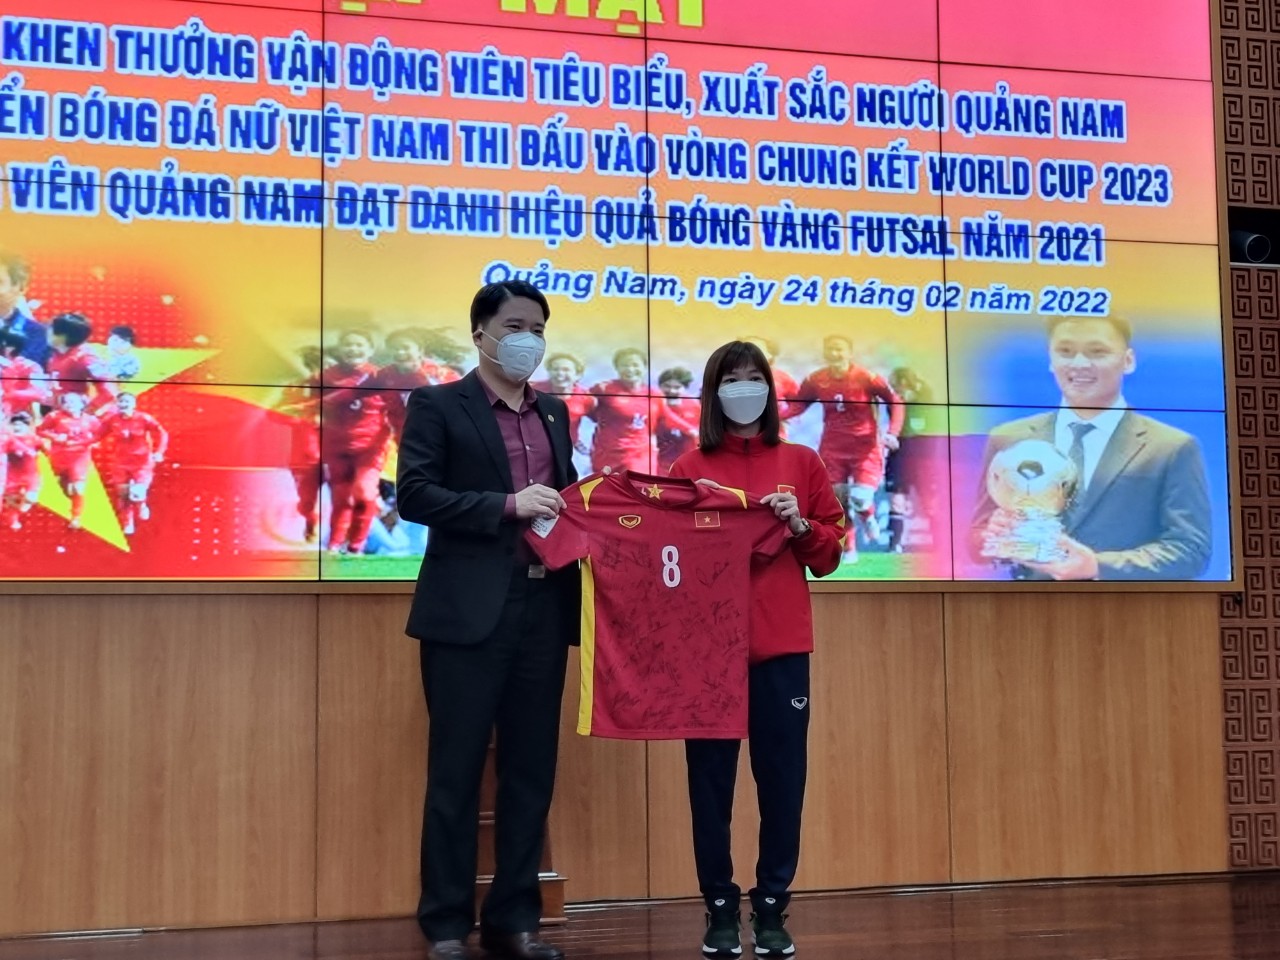 UBND tỉnh Quảng Nam đã tổ chức buổi gặp mặt tuyên dương, khen thưởng 4 vận động viên tiêu biểu, xuất sắc người Quảng Nam tham gia đội tuyển bóng đá nữ Việt Nam thi đấu vào vòng chung kết World Cup Bóng đá nữ thế giới 2023 và vận động viên đoạt Quả bóng vàng futsal Việt Nam năm 2021.